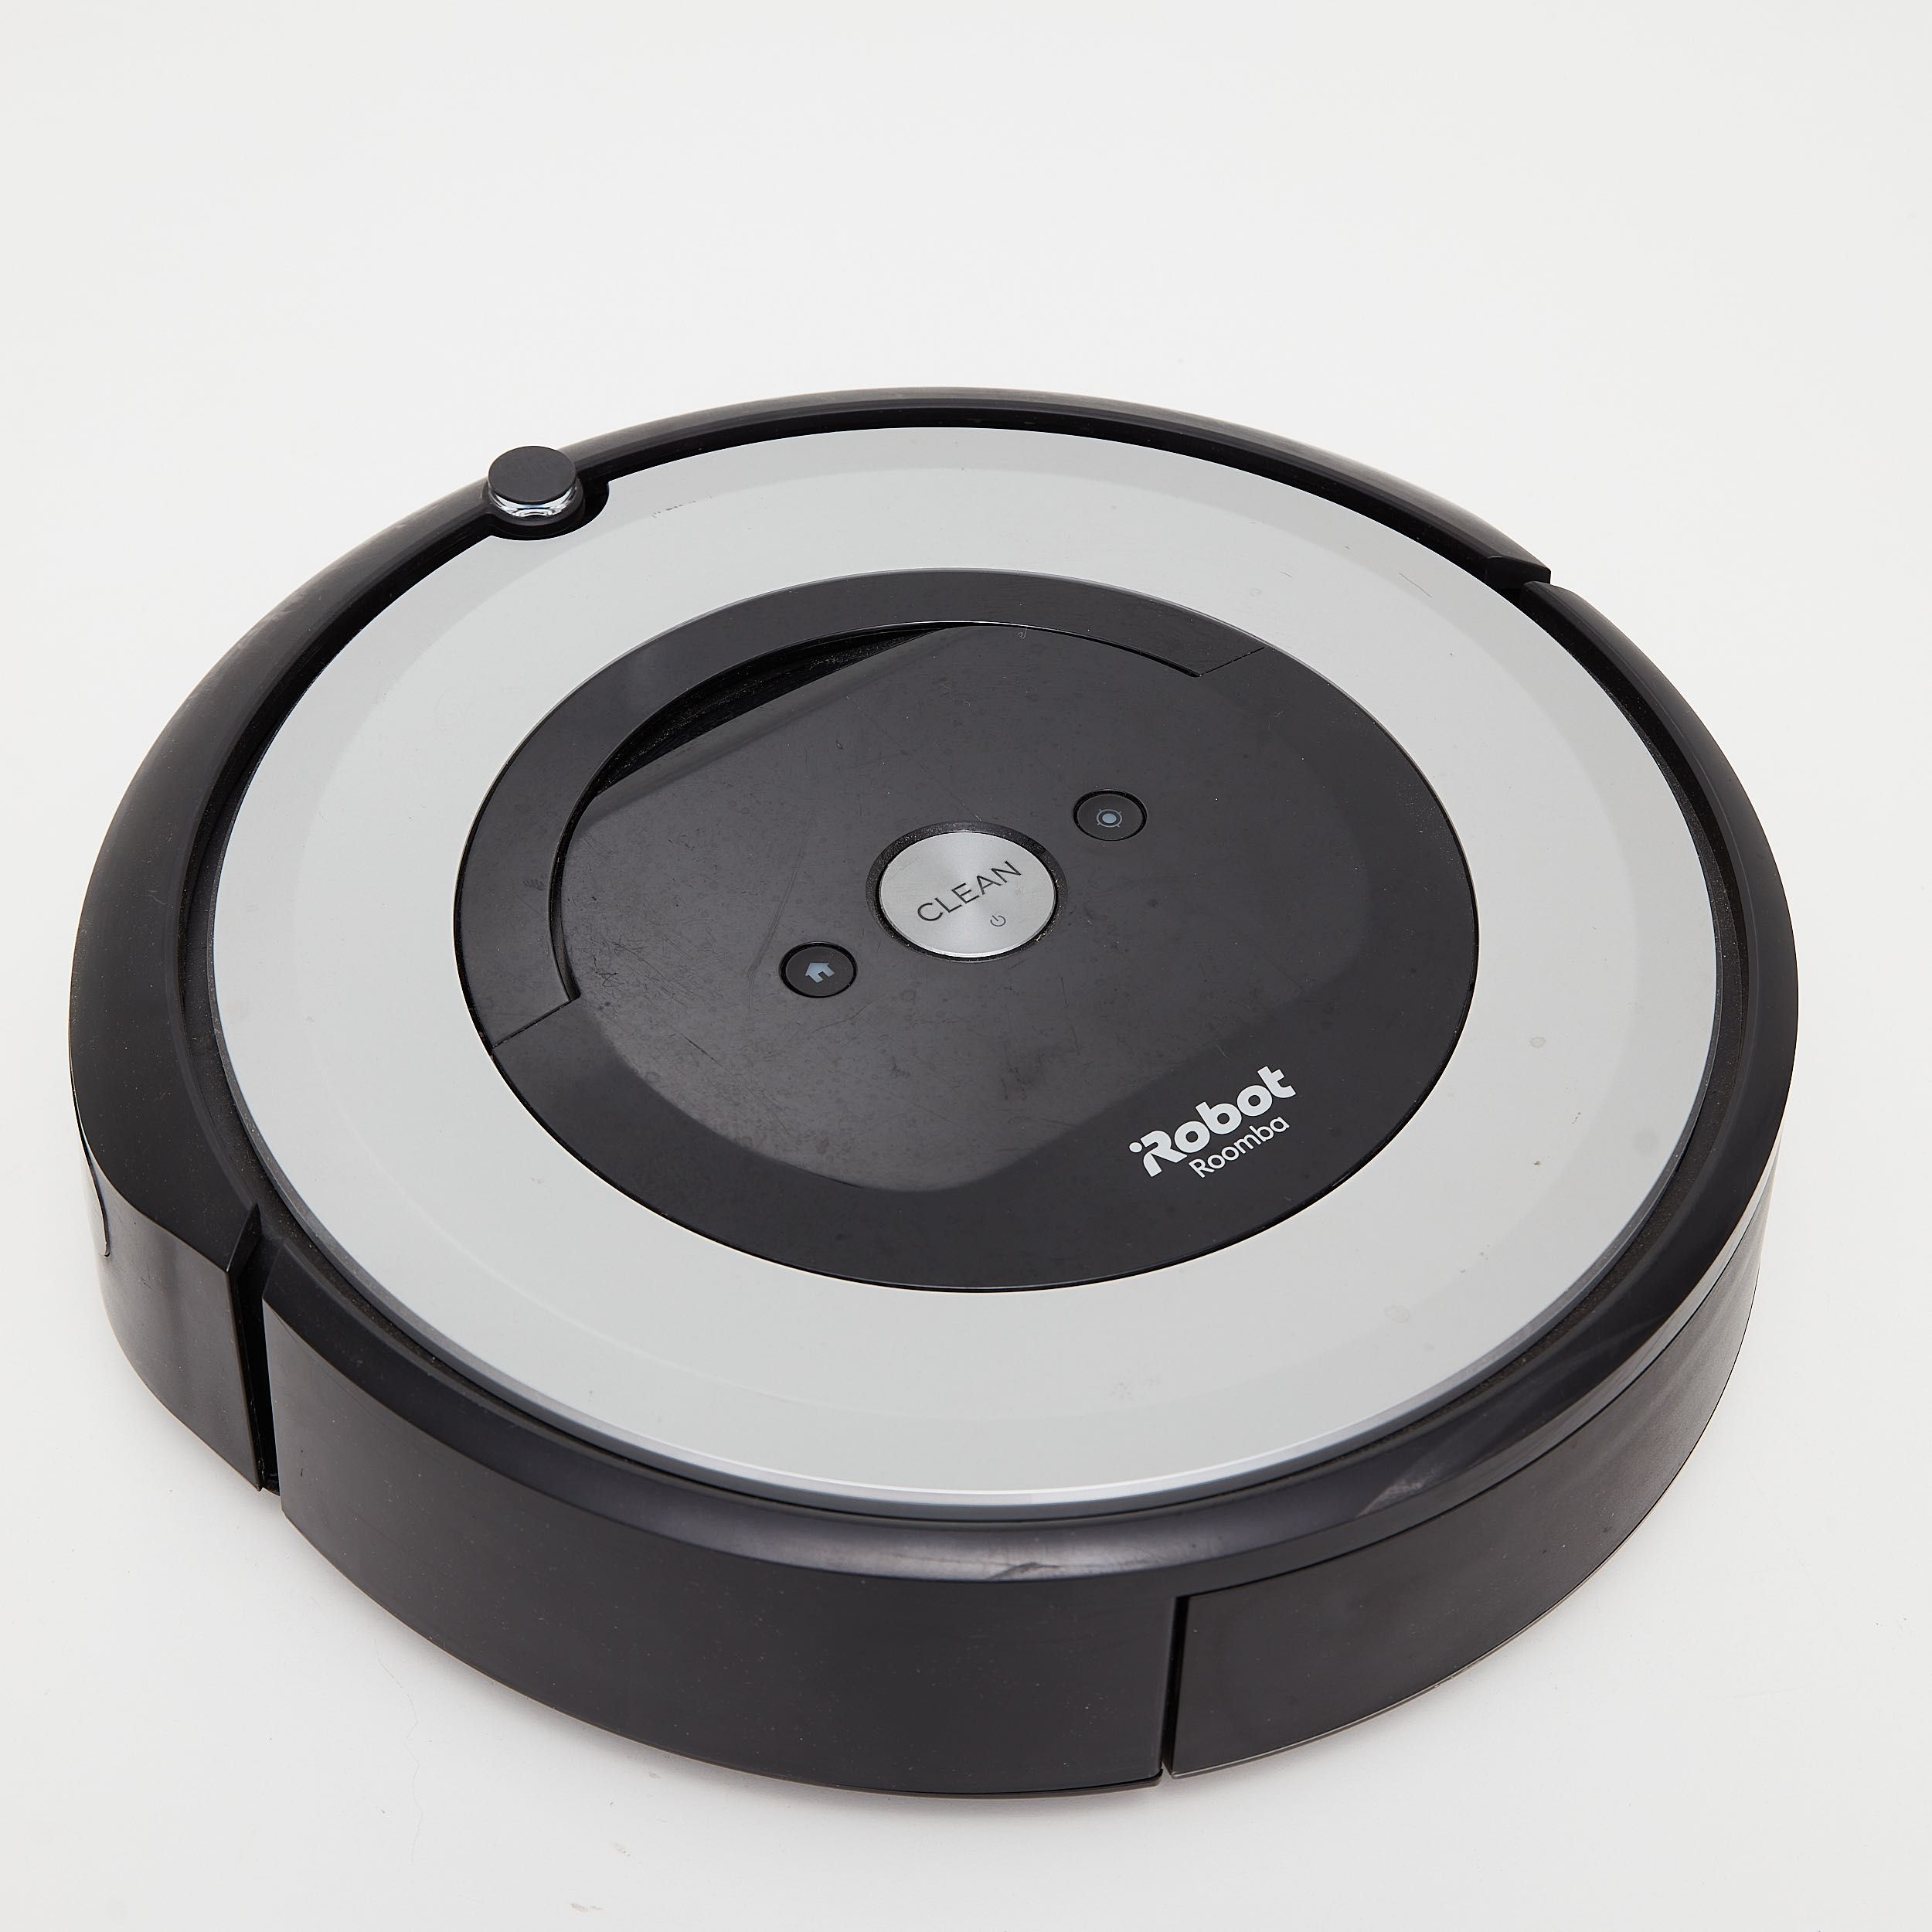 Aspirador iRobot Roomba e5